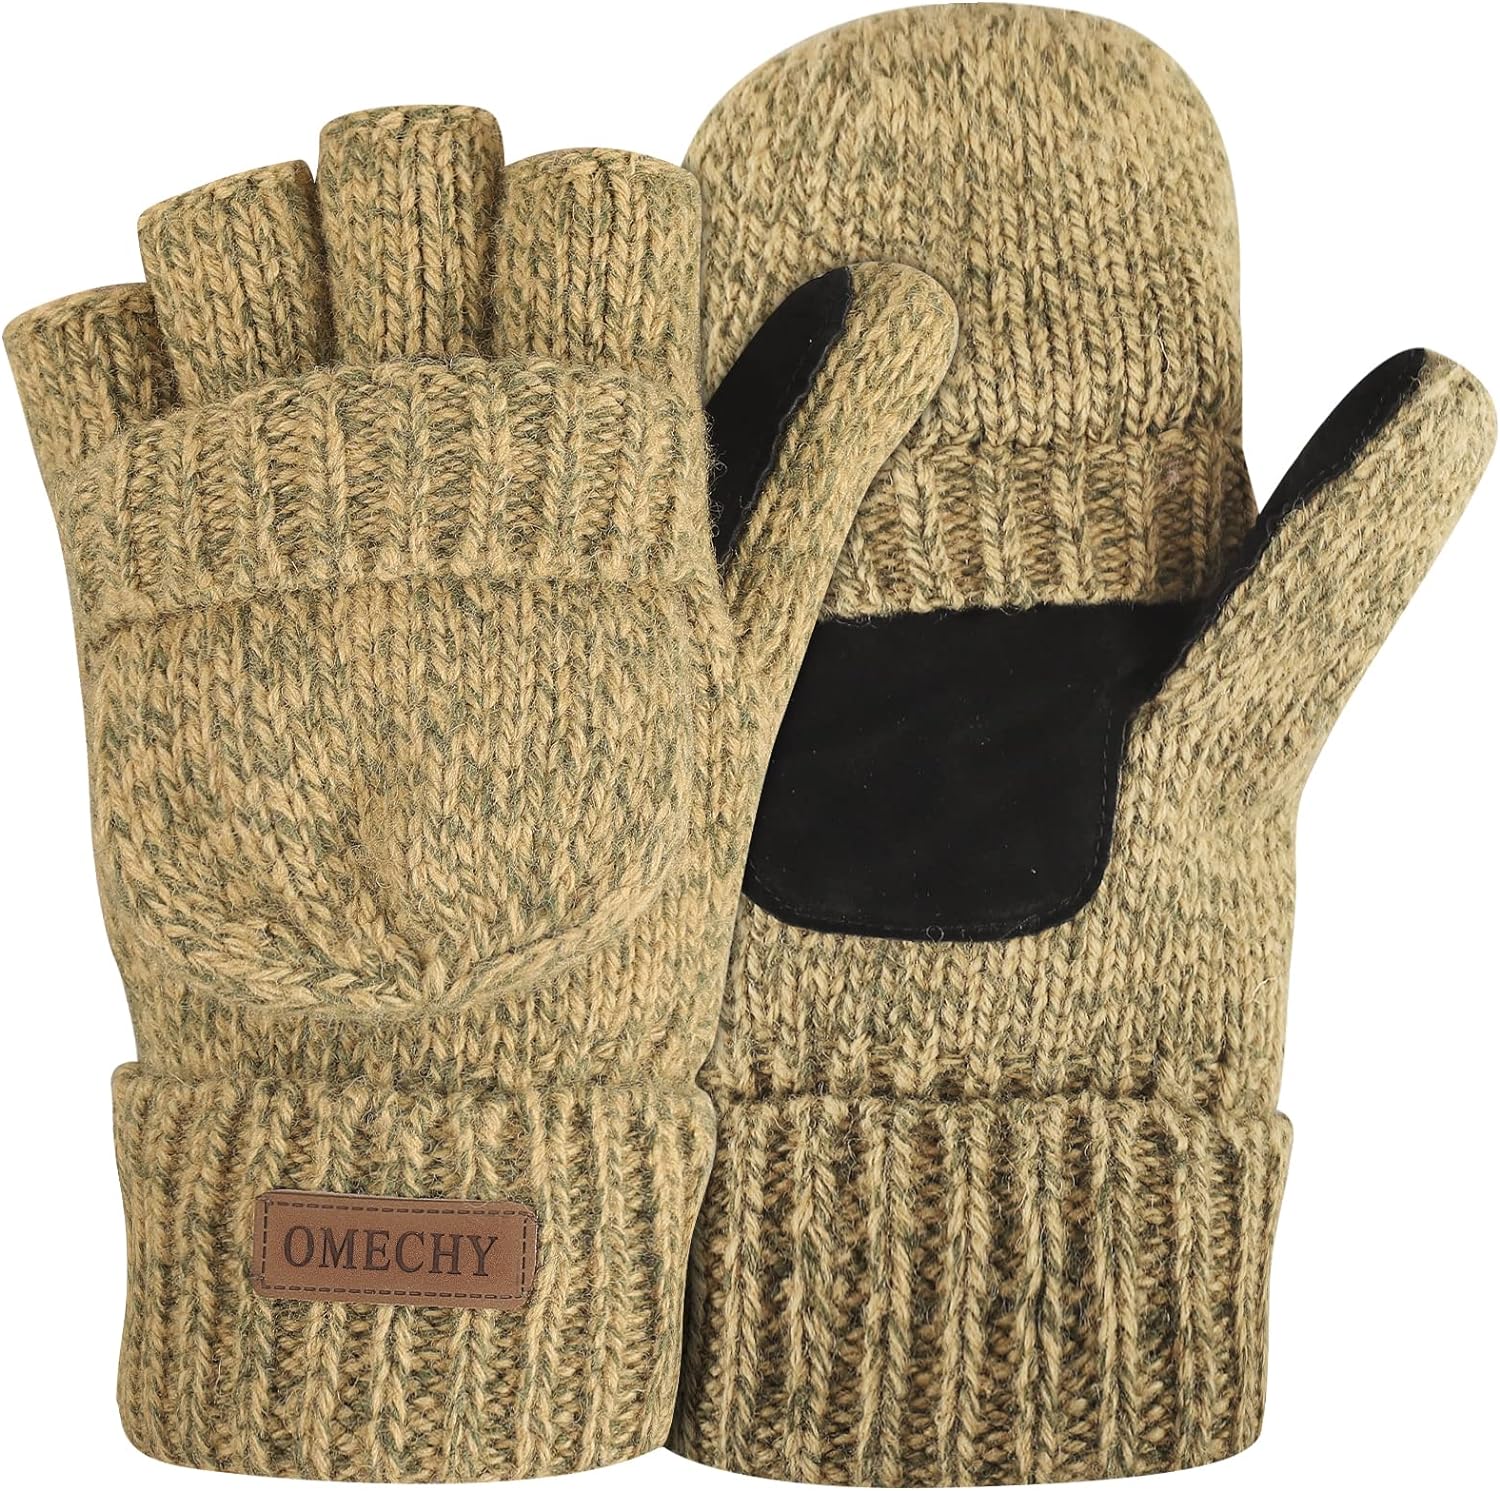 Winter Knitted Convertible Fingerless Gloves Wool Mittens Warm